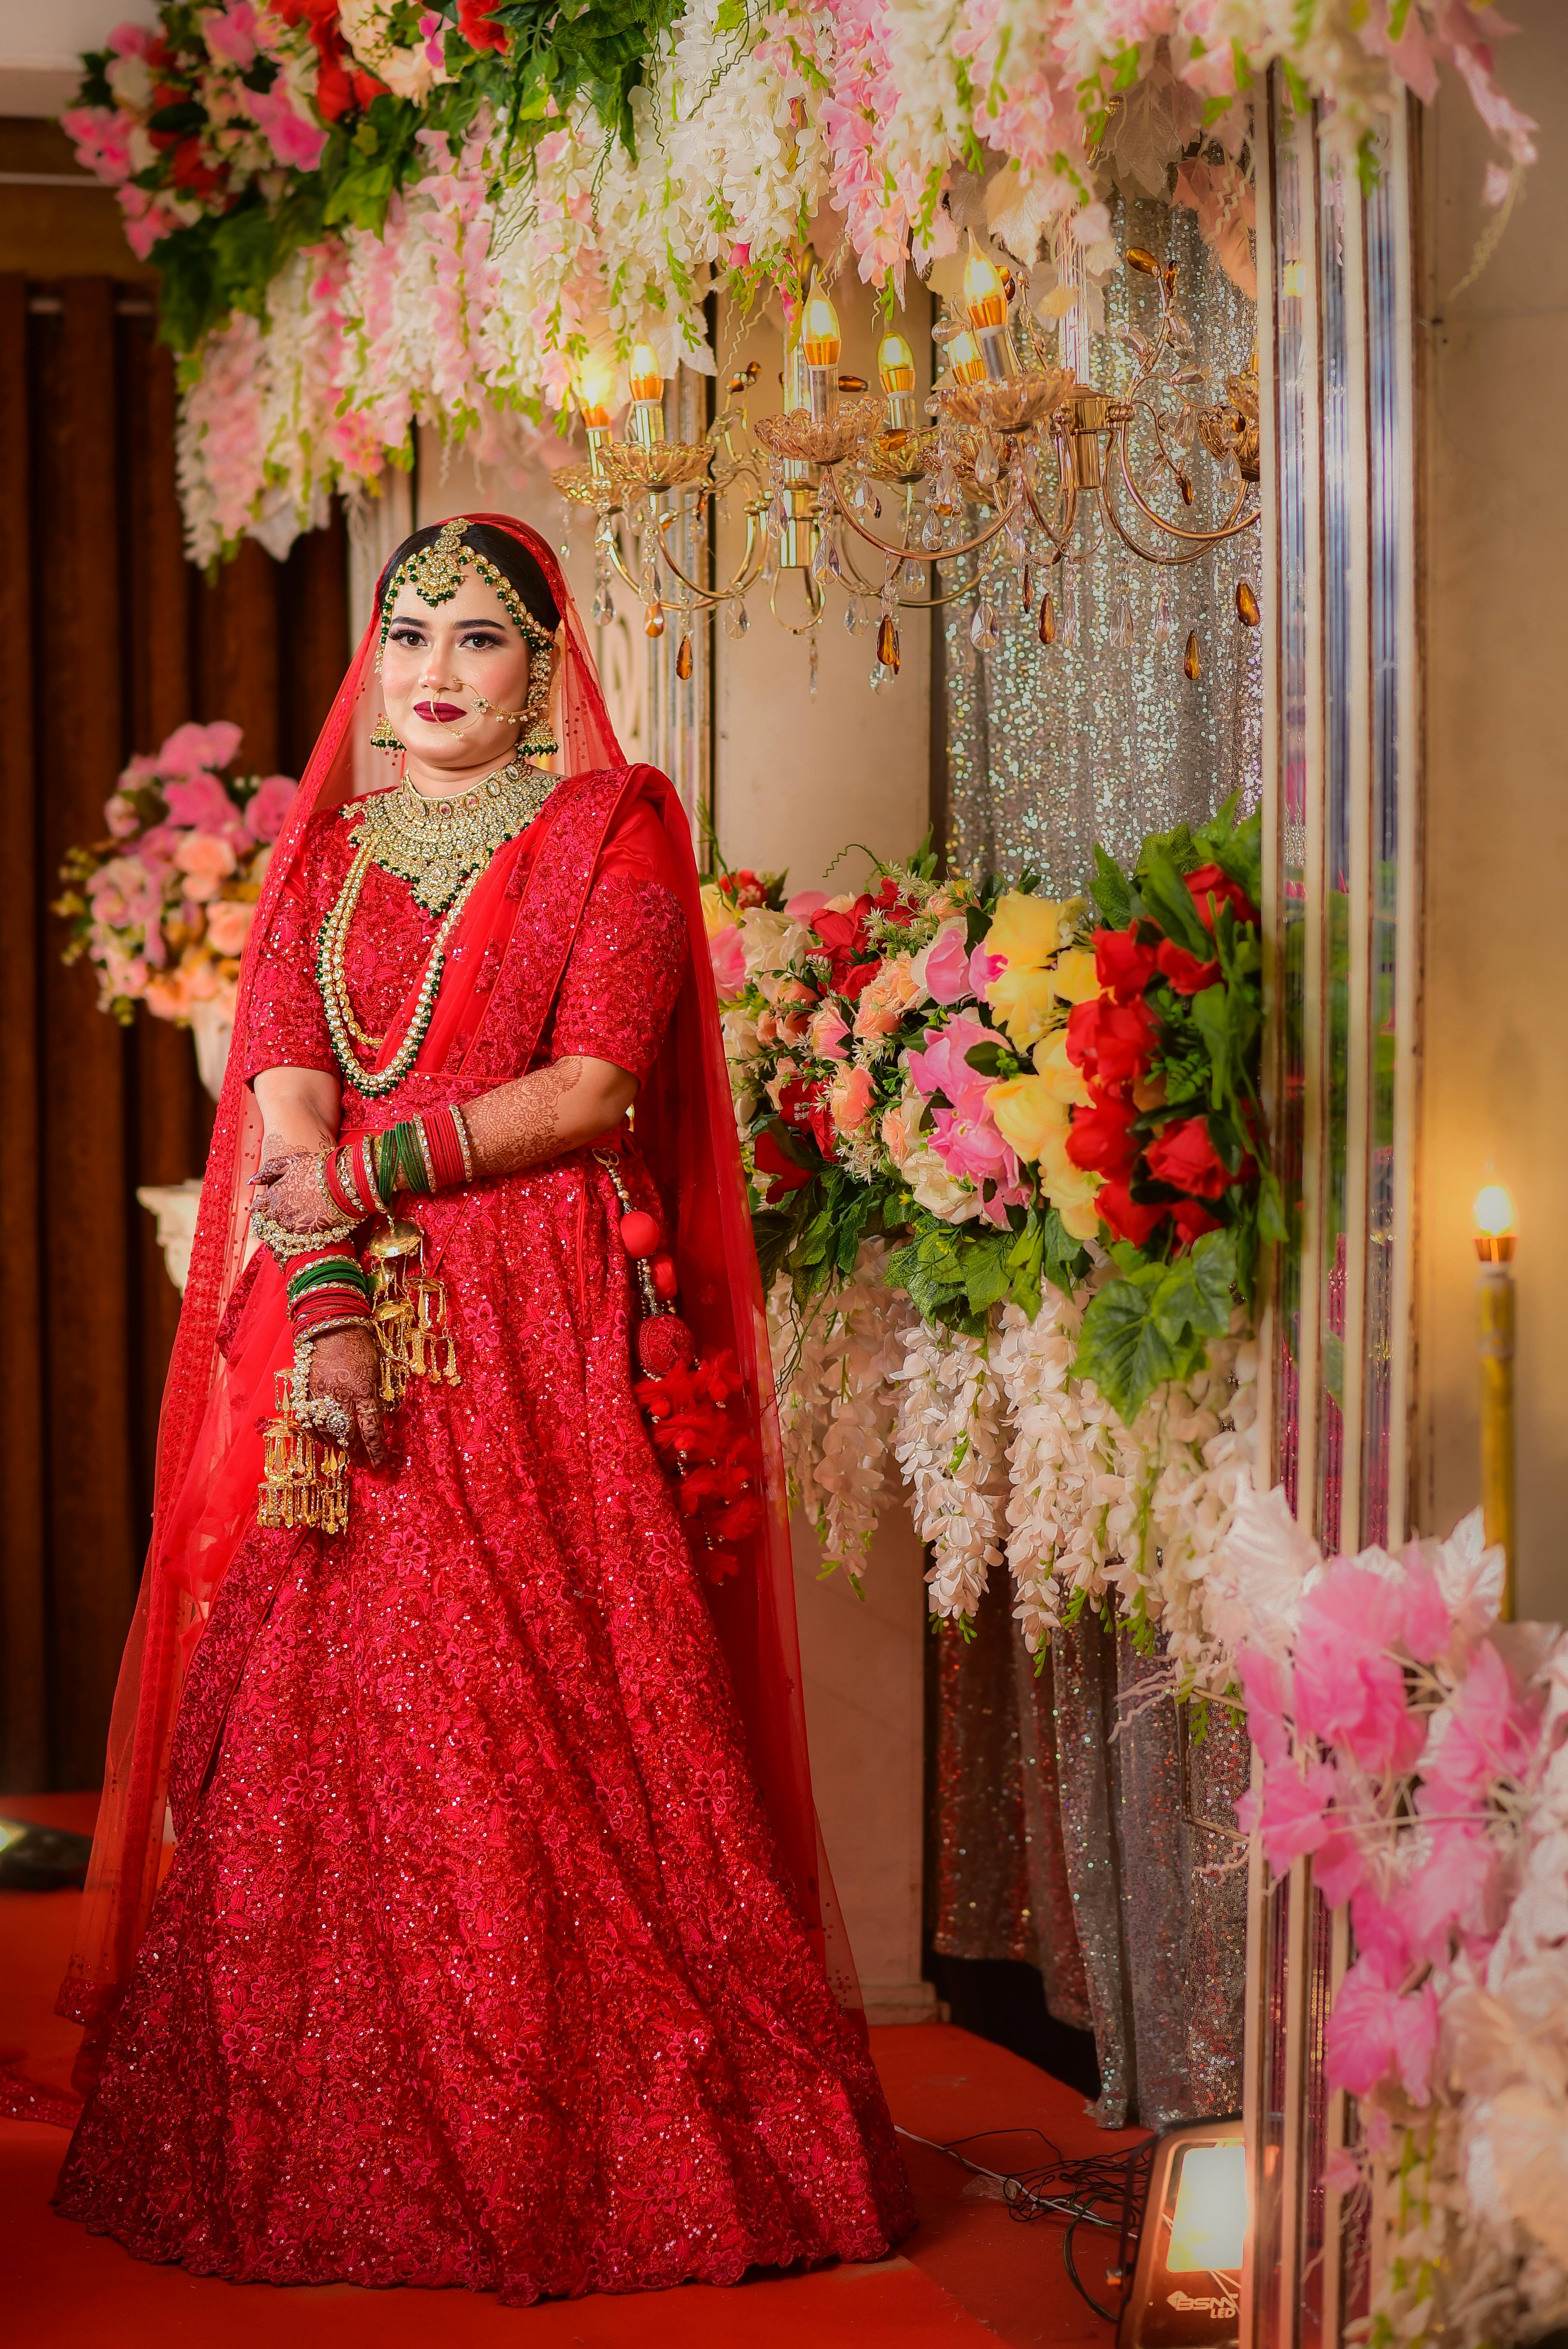 Indian bridal beach photoshoot | Bridal photoshoot, Couple wedding dress, Bride  photography poses